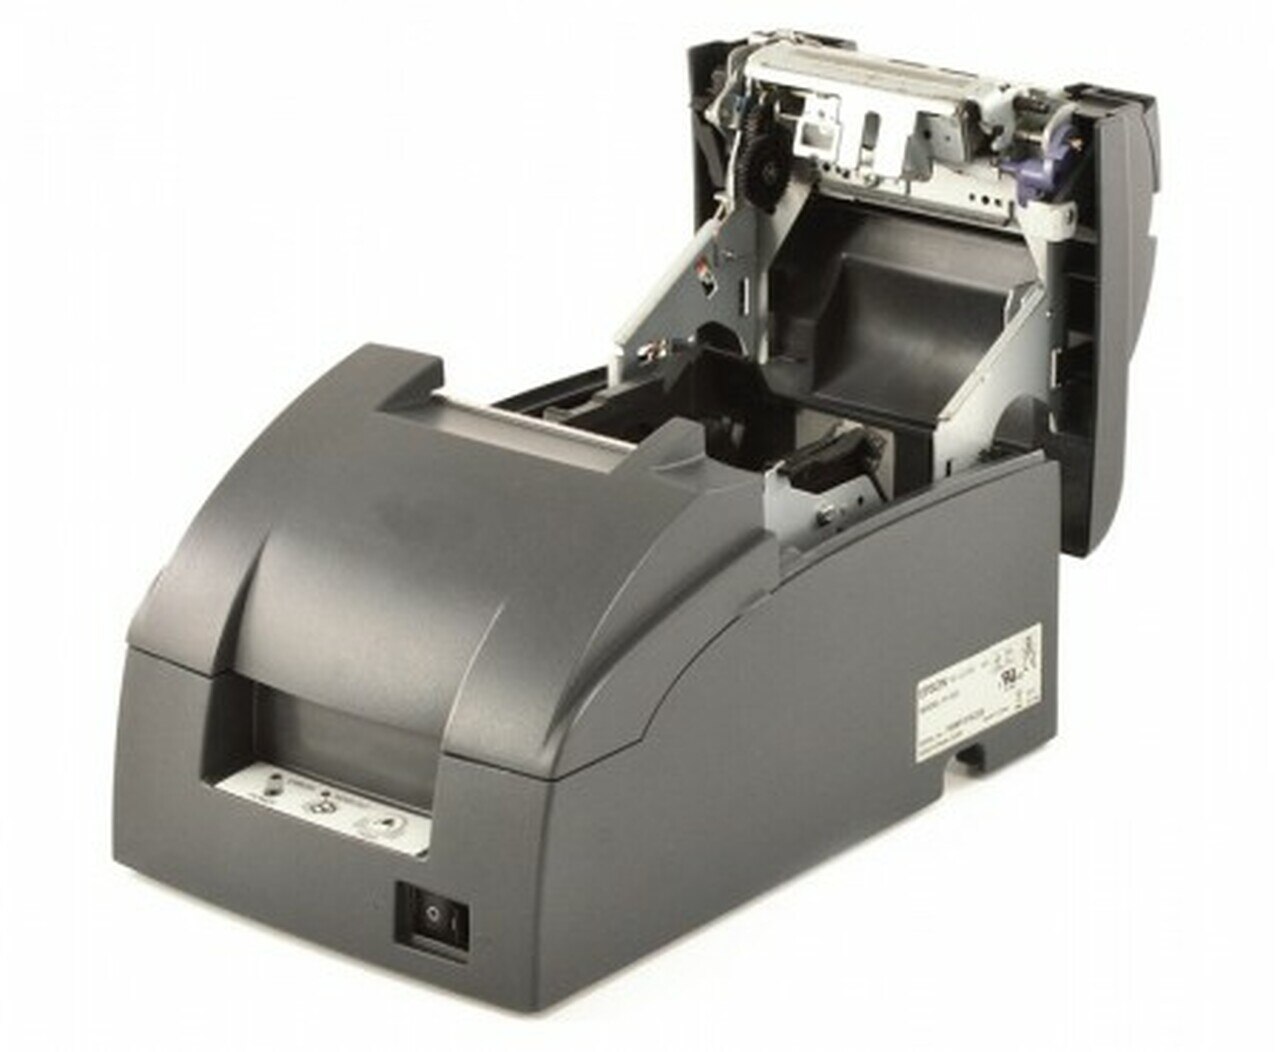 epson tm u220b printer manual